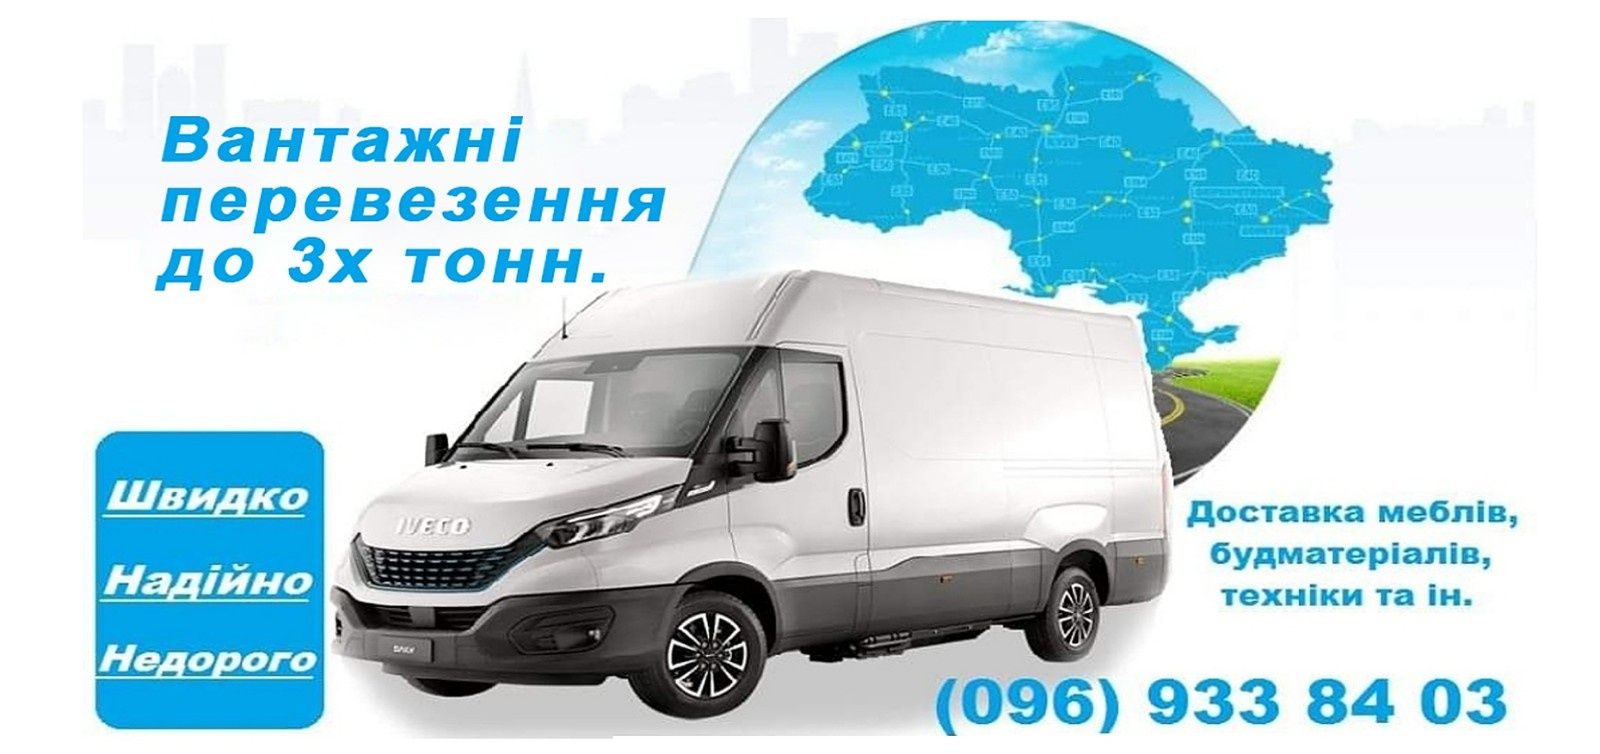 Вантажні перевезення по Україні, доставка товару, переїзд,Миронівка.